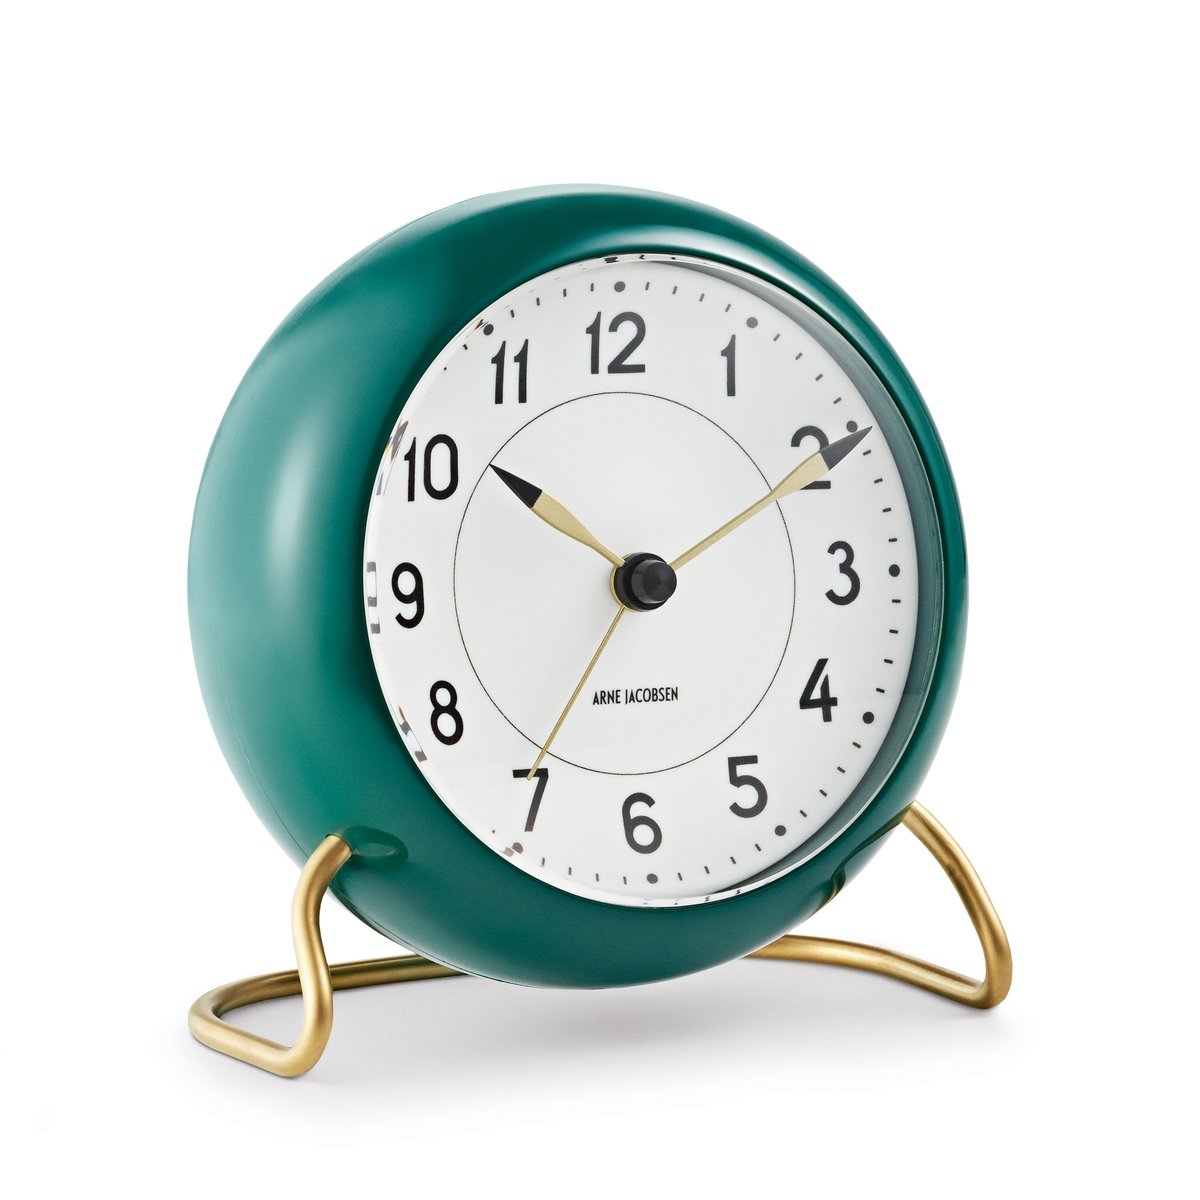 Arne Jacobsen Clocks AJ Station bord ur grøn grøn